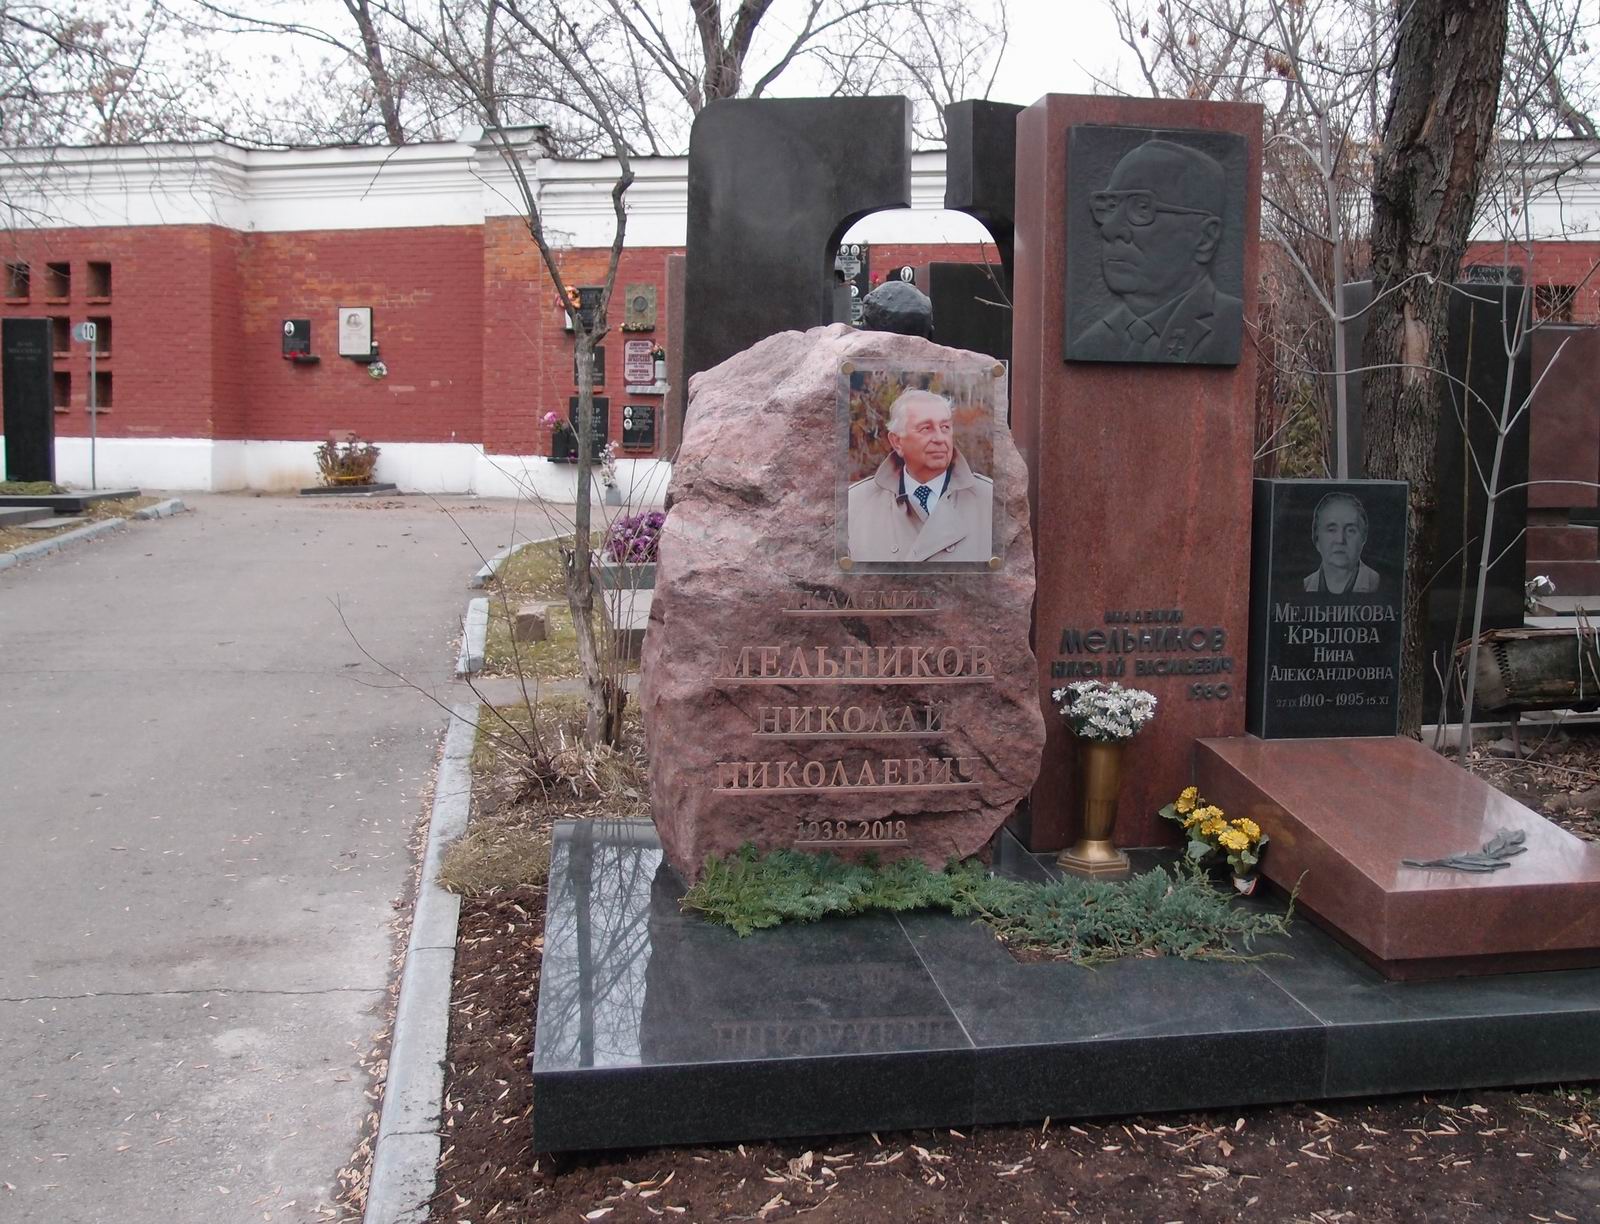 Памятник на могиле Мельникова Н.В. (1909-1980), на Новодевичьем кладбище (9-6-1). Нажмите левую кнопку мыши чтобы увидеть фрагмент памятника.